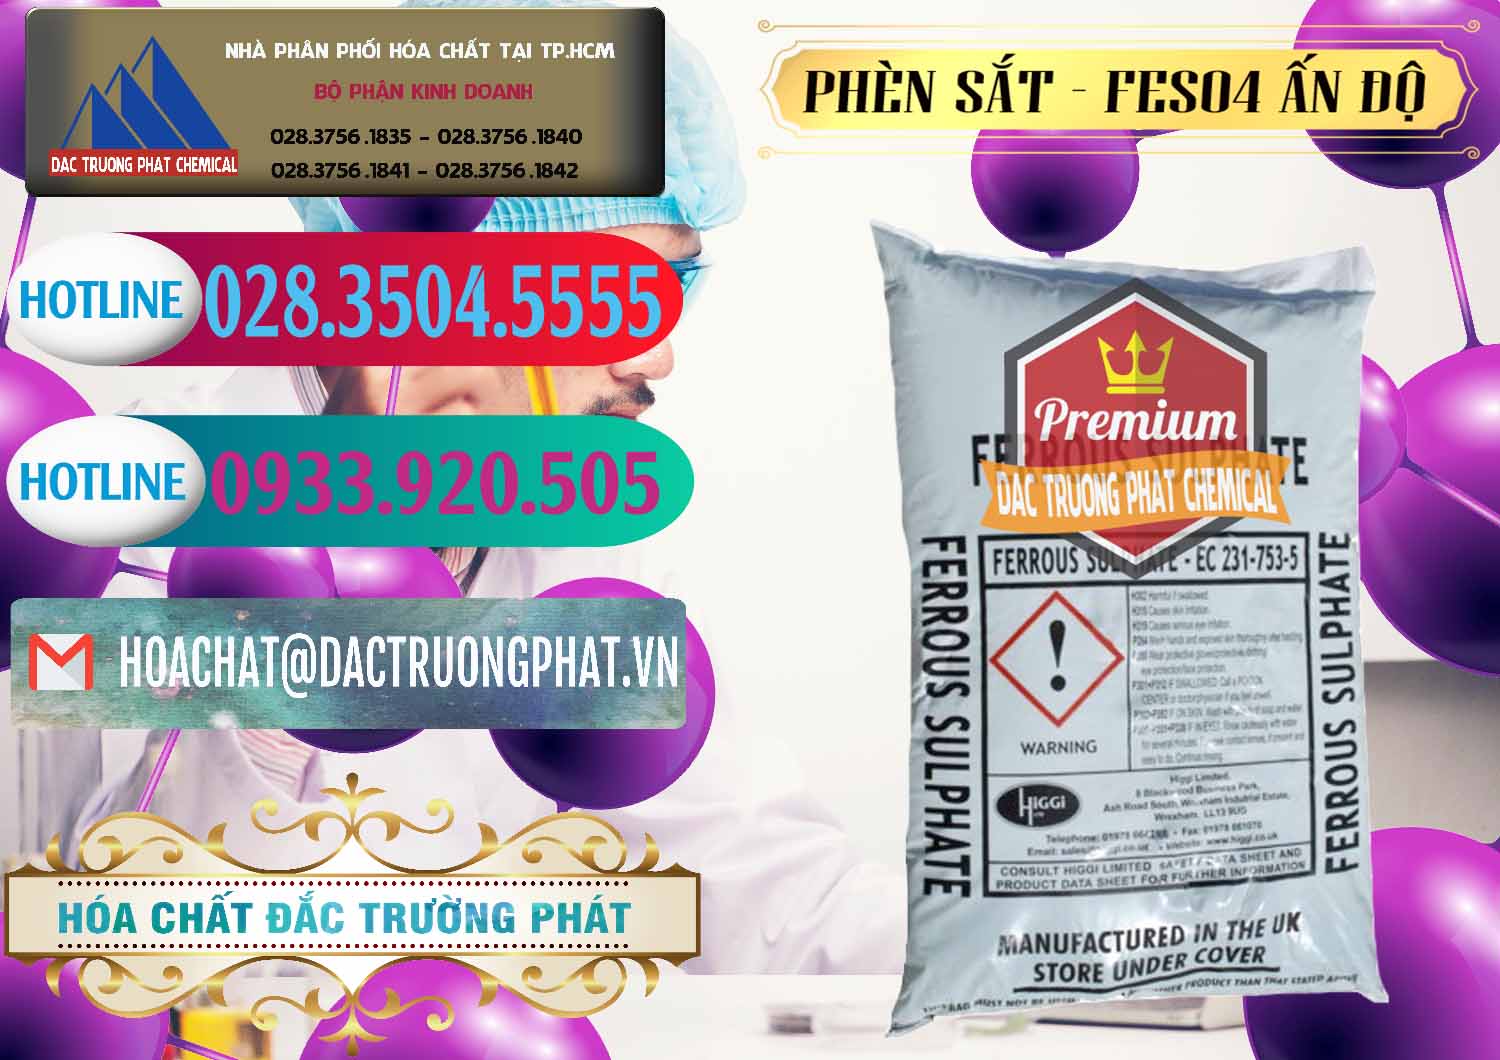 Nhà phân phối & bán Phèn Sắt - FeSO4.7H2O Ấn Độ India - 0354 - Cung cấp và kinh doanh hóa chất tại TP.HCM - truongphat.vn